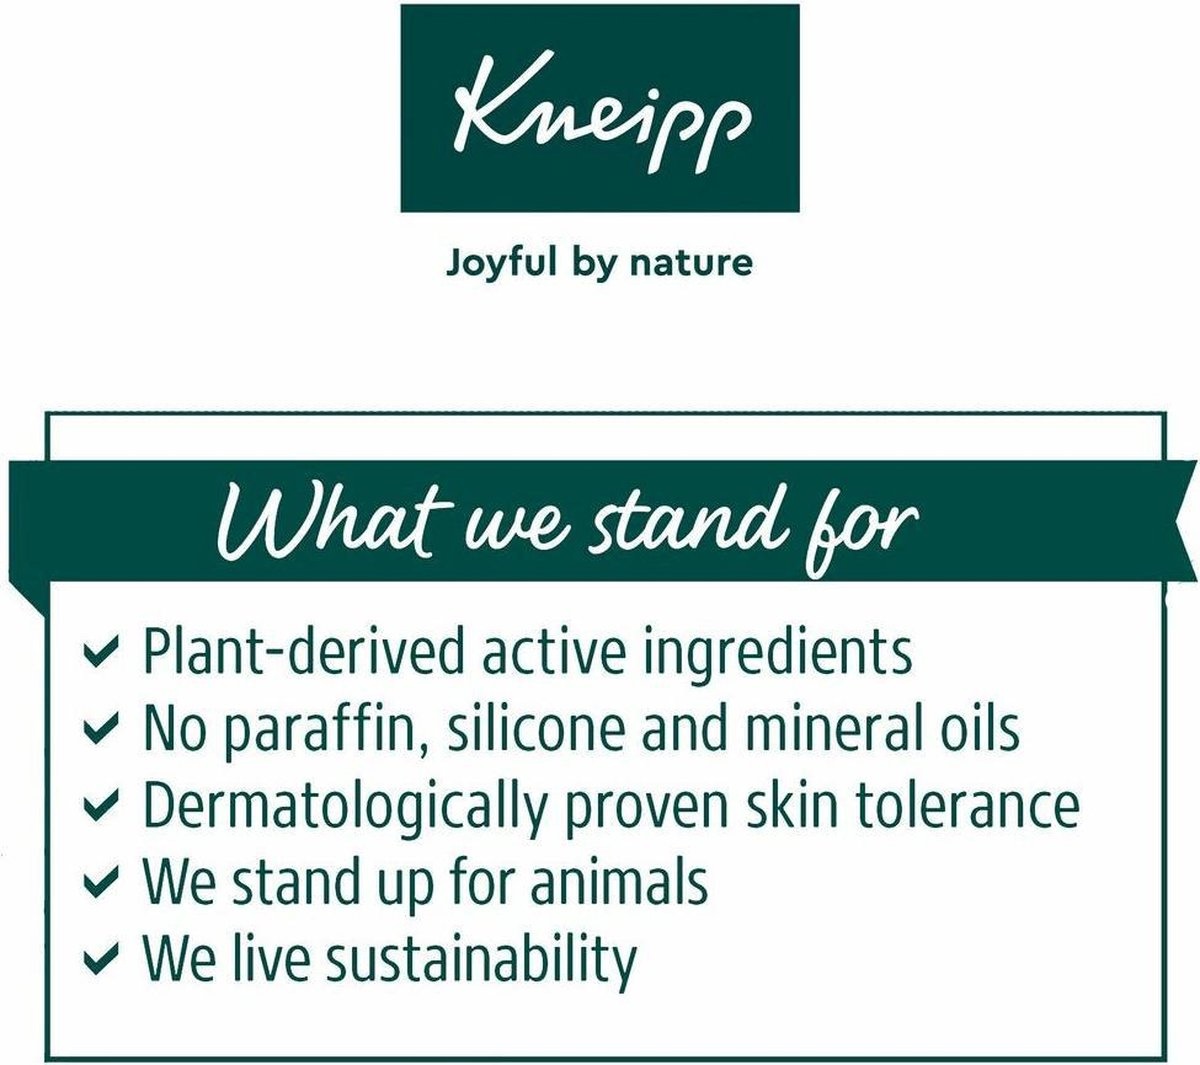 Kneipp Soft Skin - Huile pour la peau 100ml - Emballage endommagé